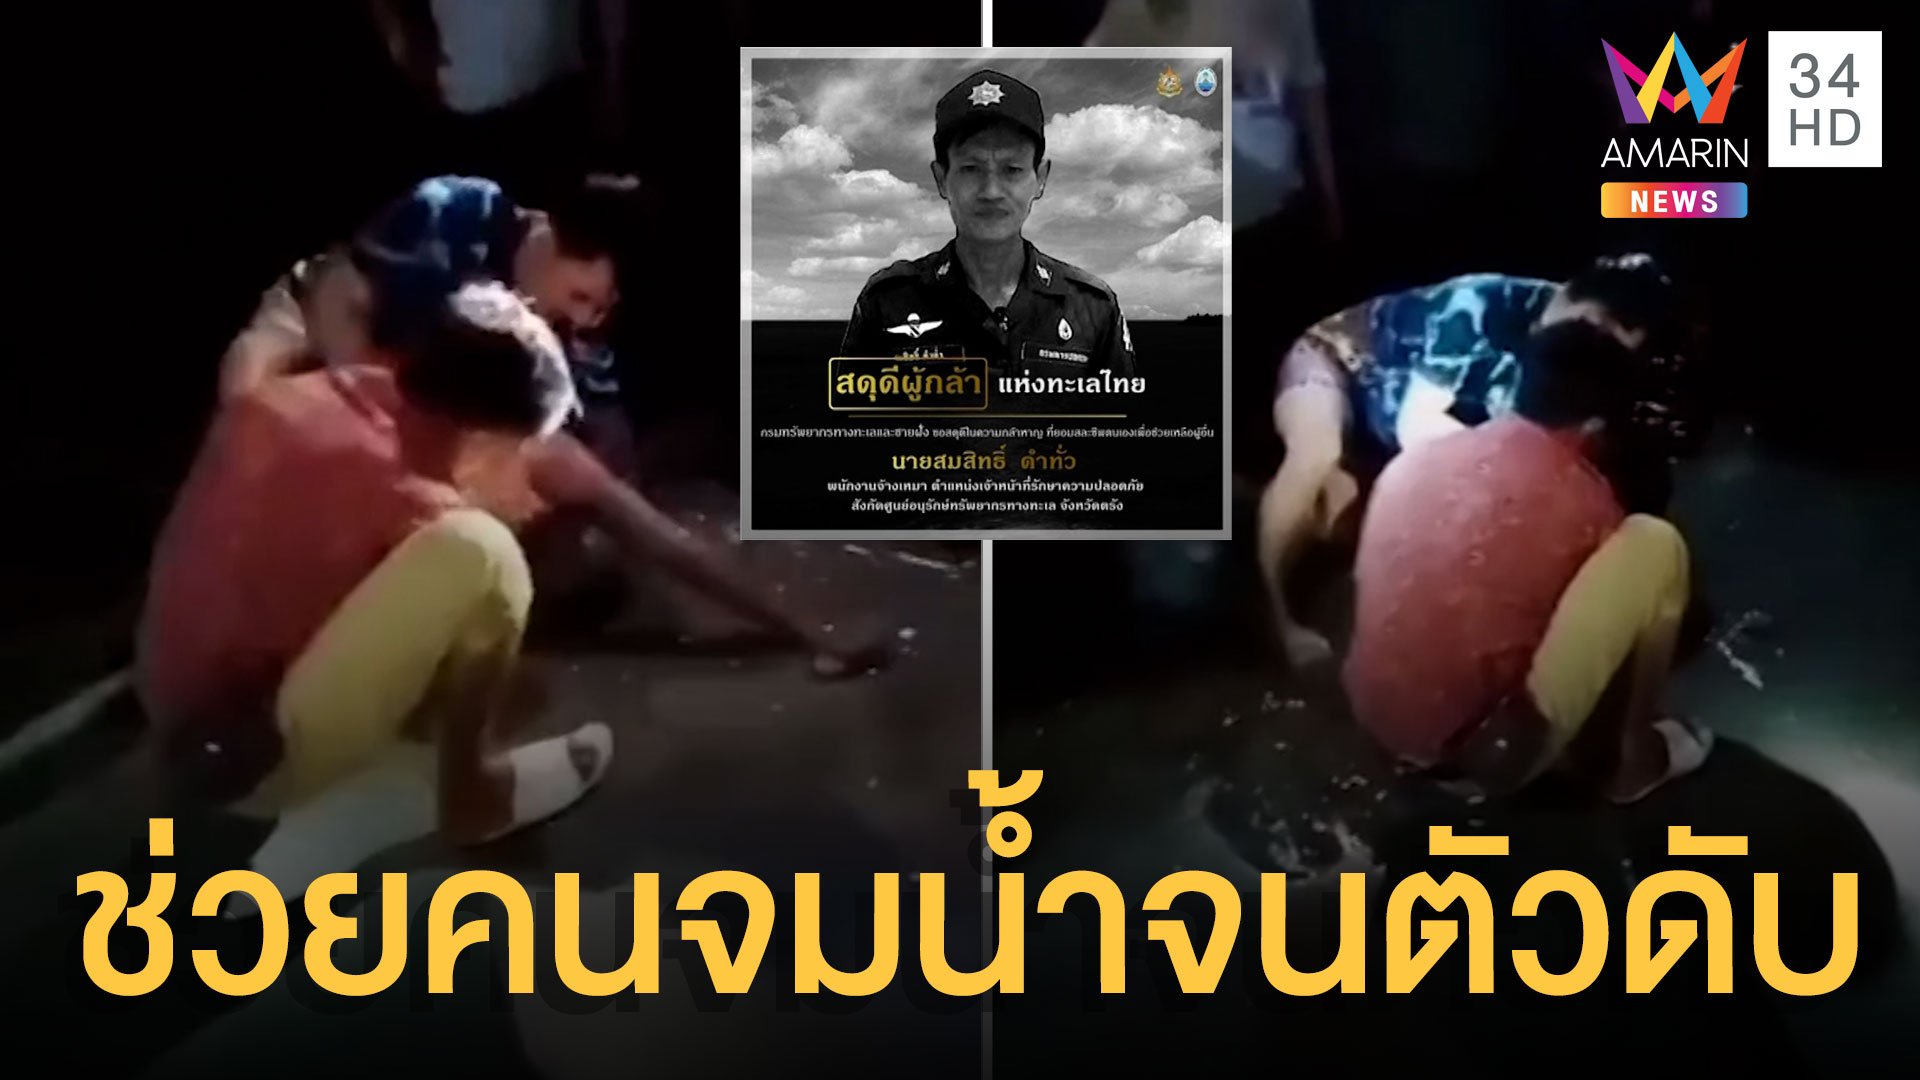 สดุดีฮีโร่ทะเลไทย ช่วยคนจมน้ำ สุดท้ายตัวเองดับ | ข่าวเที่ยงอมรินทร์ | 4 ม.ค. 65 | AMARIN TVHD34